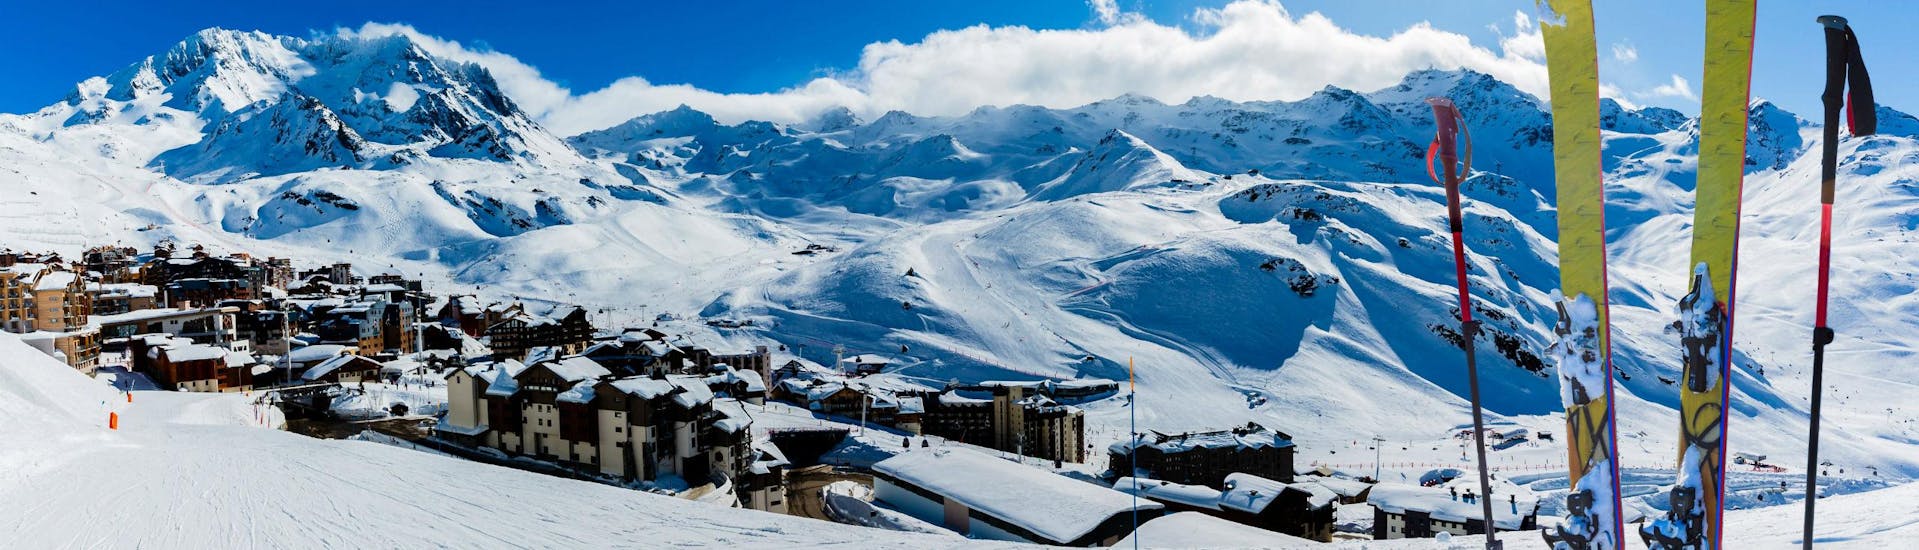 Une paire de skis plantée dans la neige sur l'une des pistes de Val Thorens, une station de ski française où les écoles de ski locales proposent différents cours de ski à ceux qui souhaitent apprendre à skier.